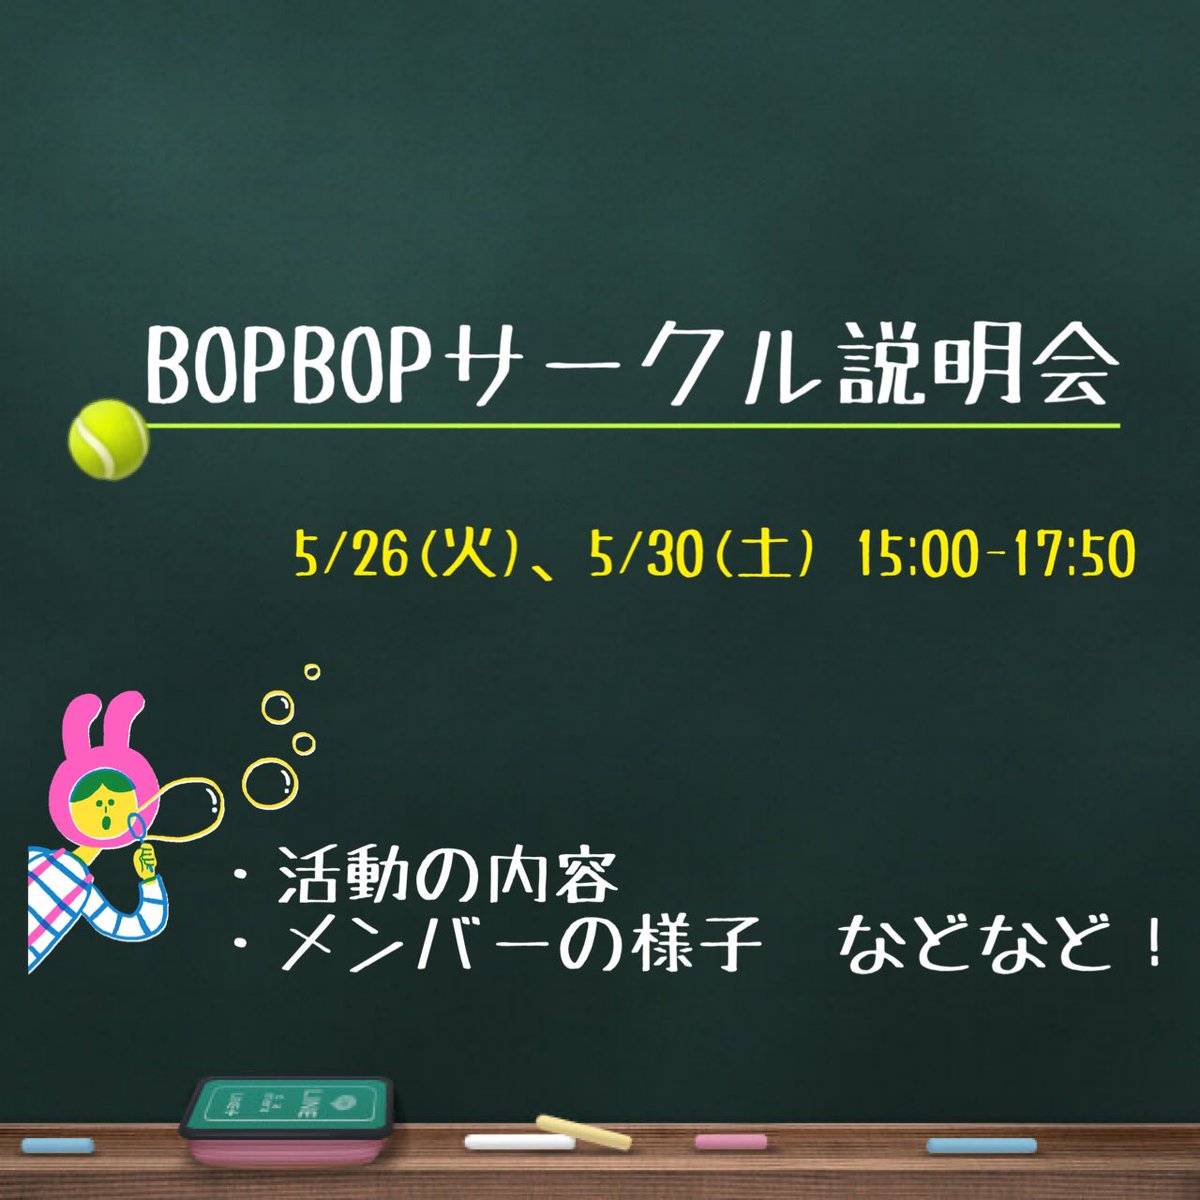 埼玉大学 テニスサークル Bop Bop Bopbop 29 Twitter